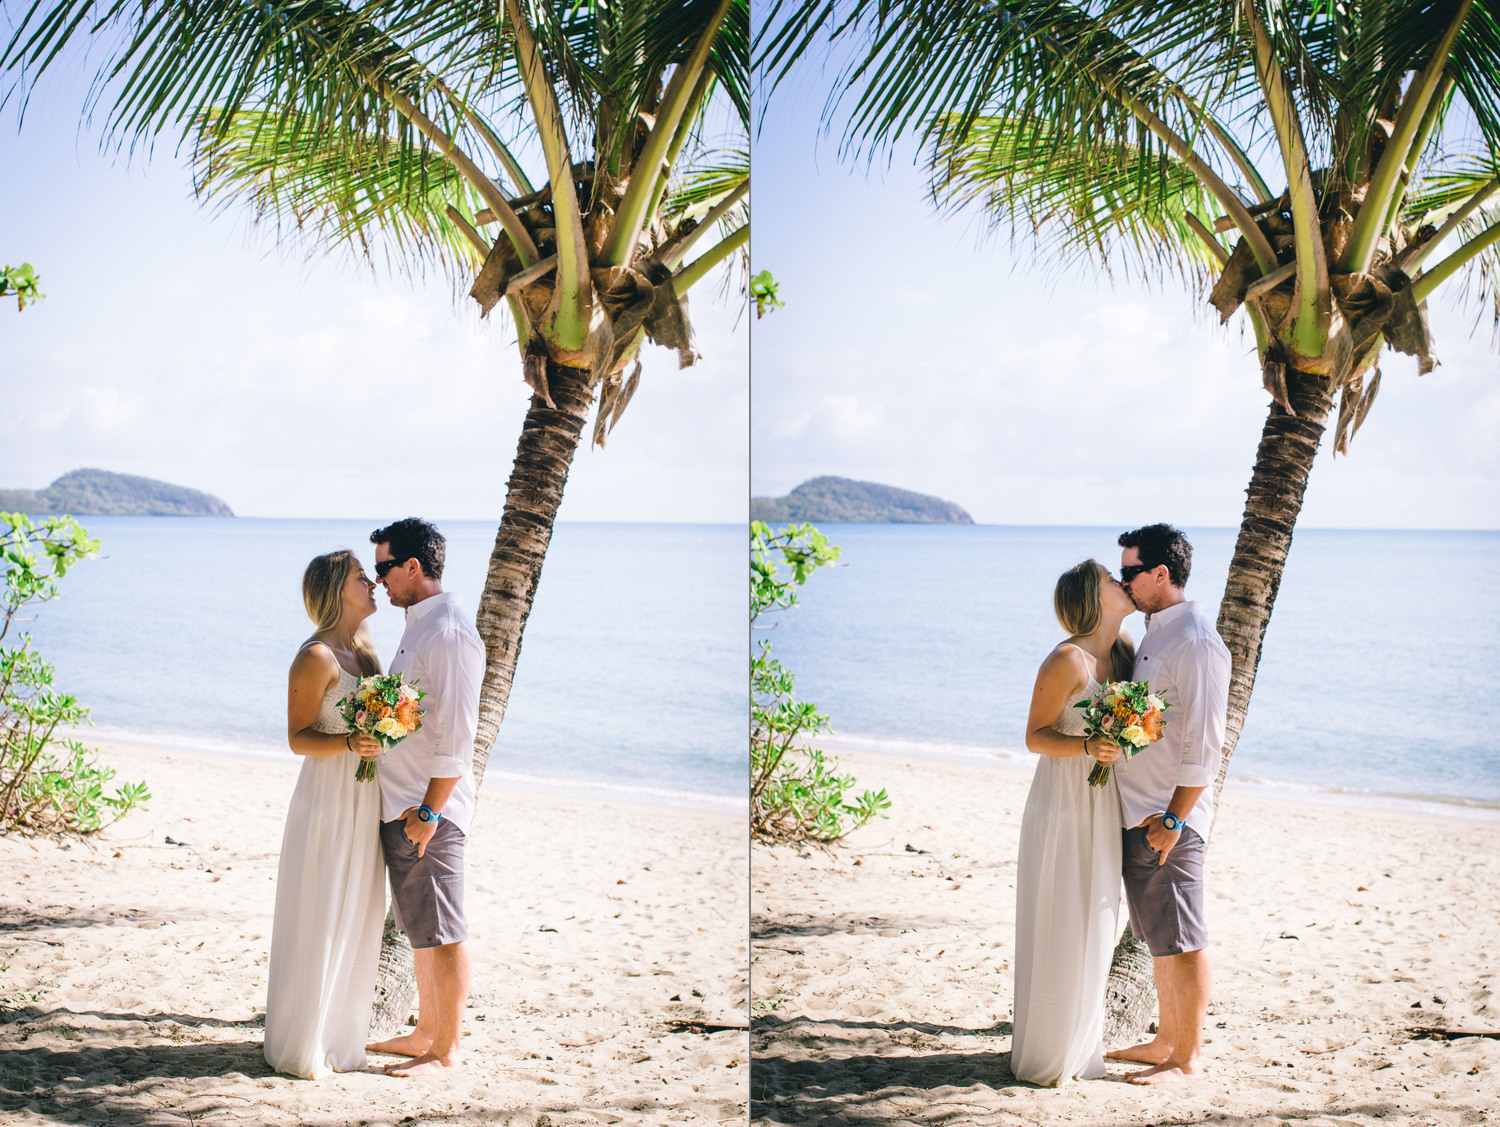 Craig + Ines Queensland seaside elopement